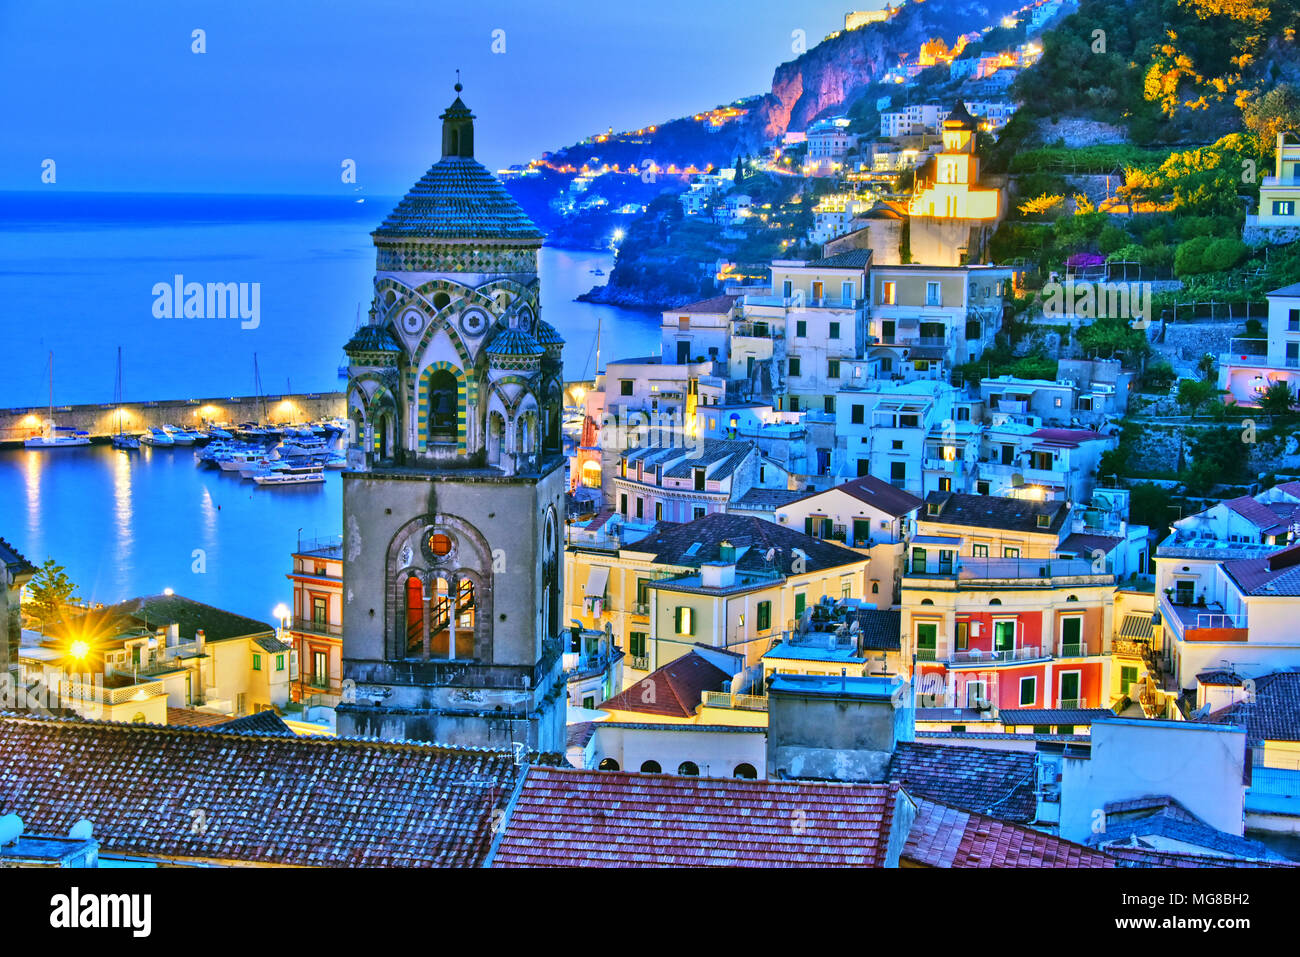 Amalfi dans la province de Salerne, Campanie, Italie Banque D'Images